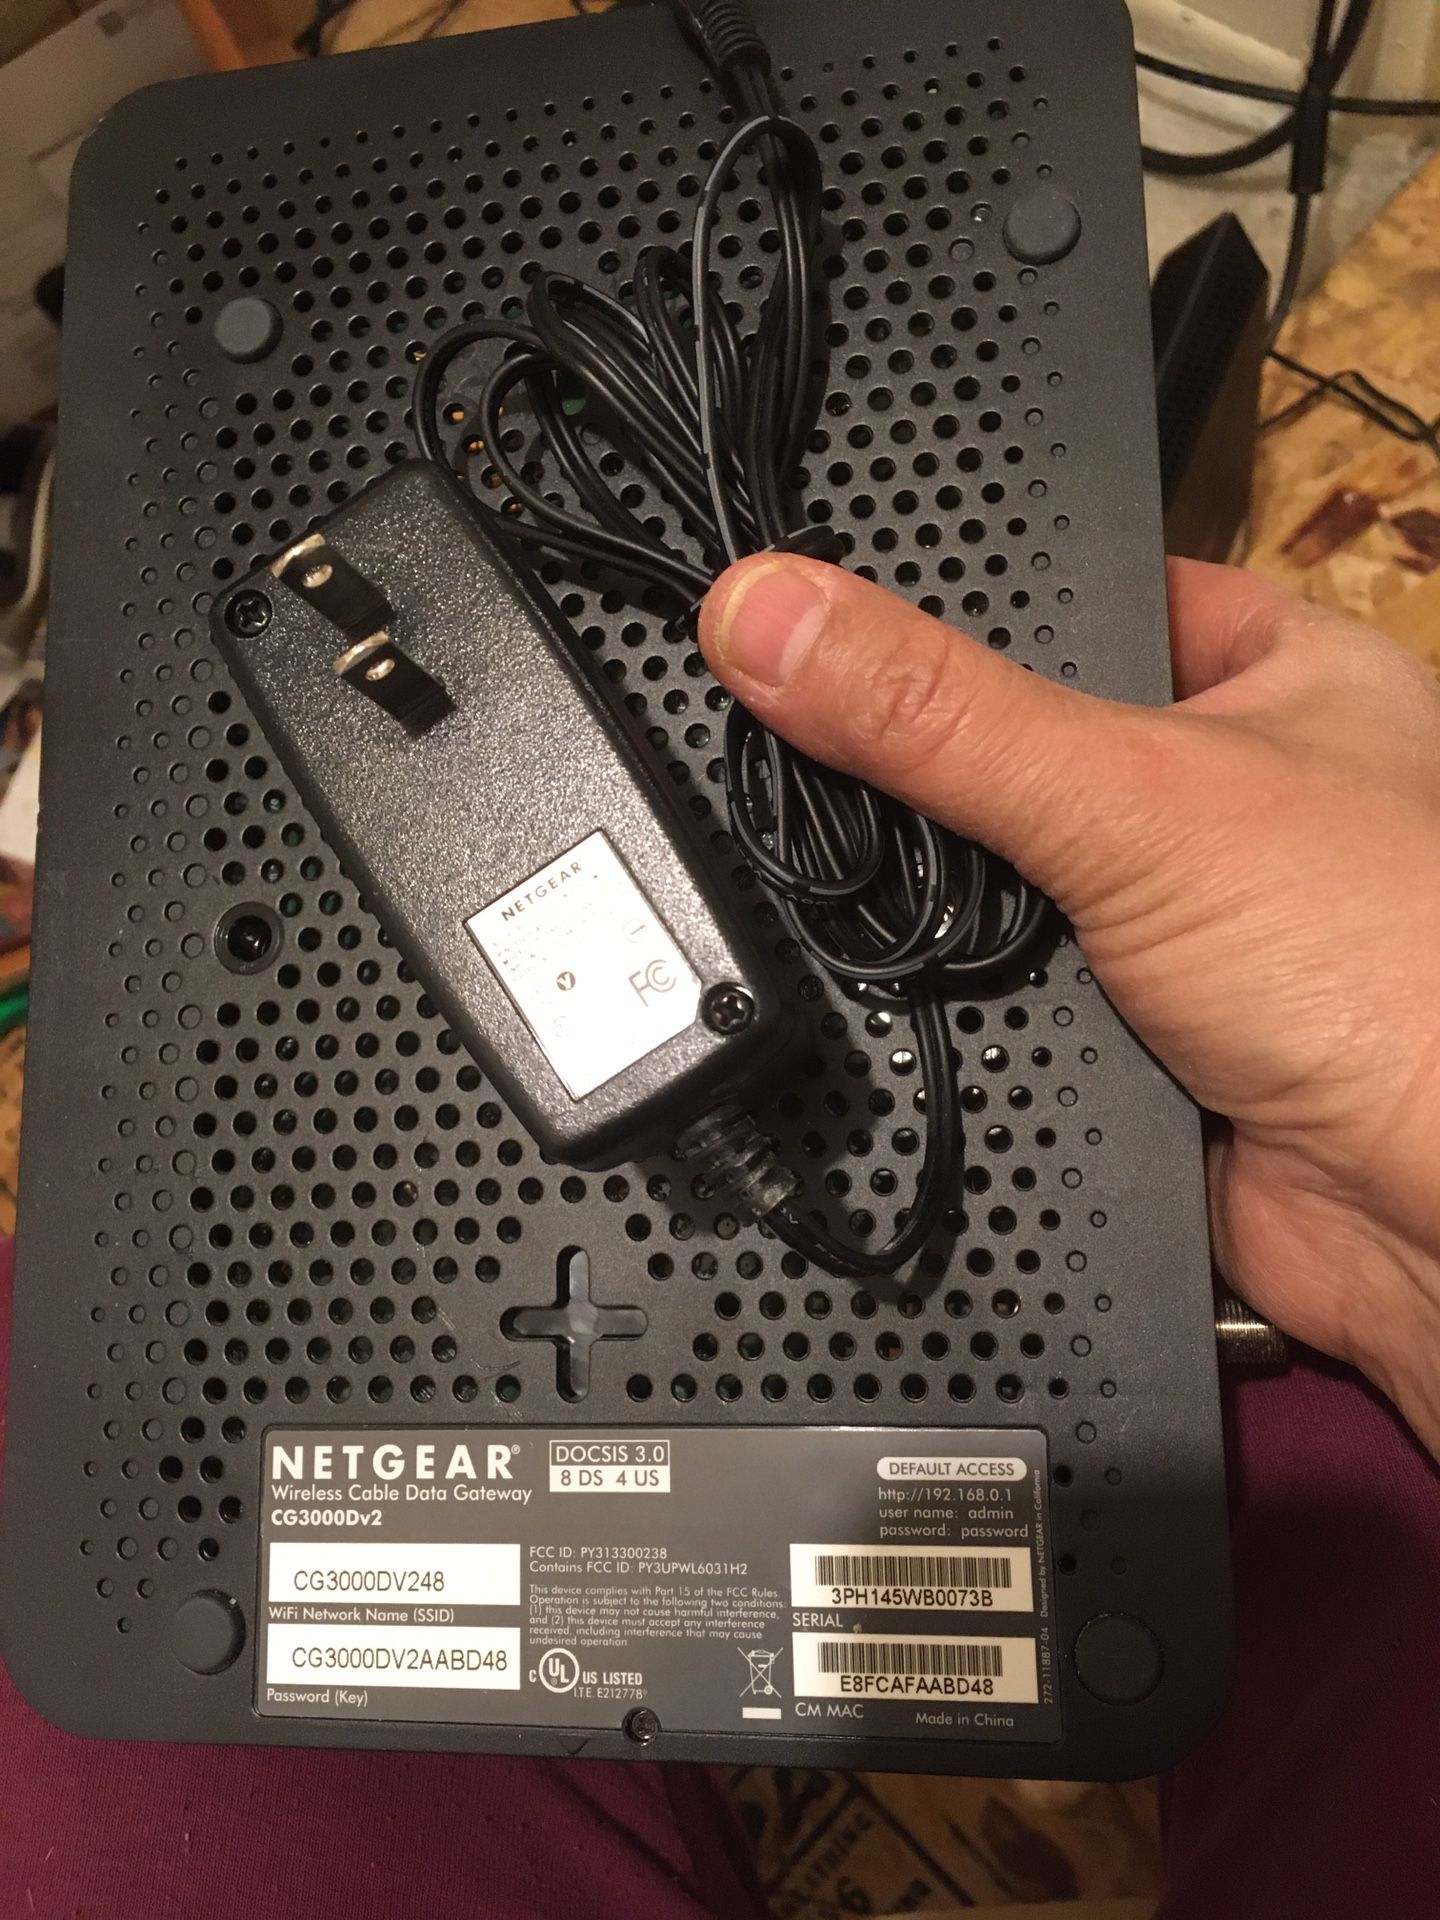 Netgear dual modem/router